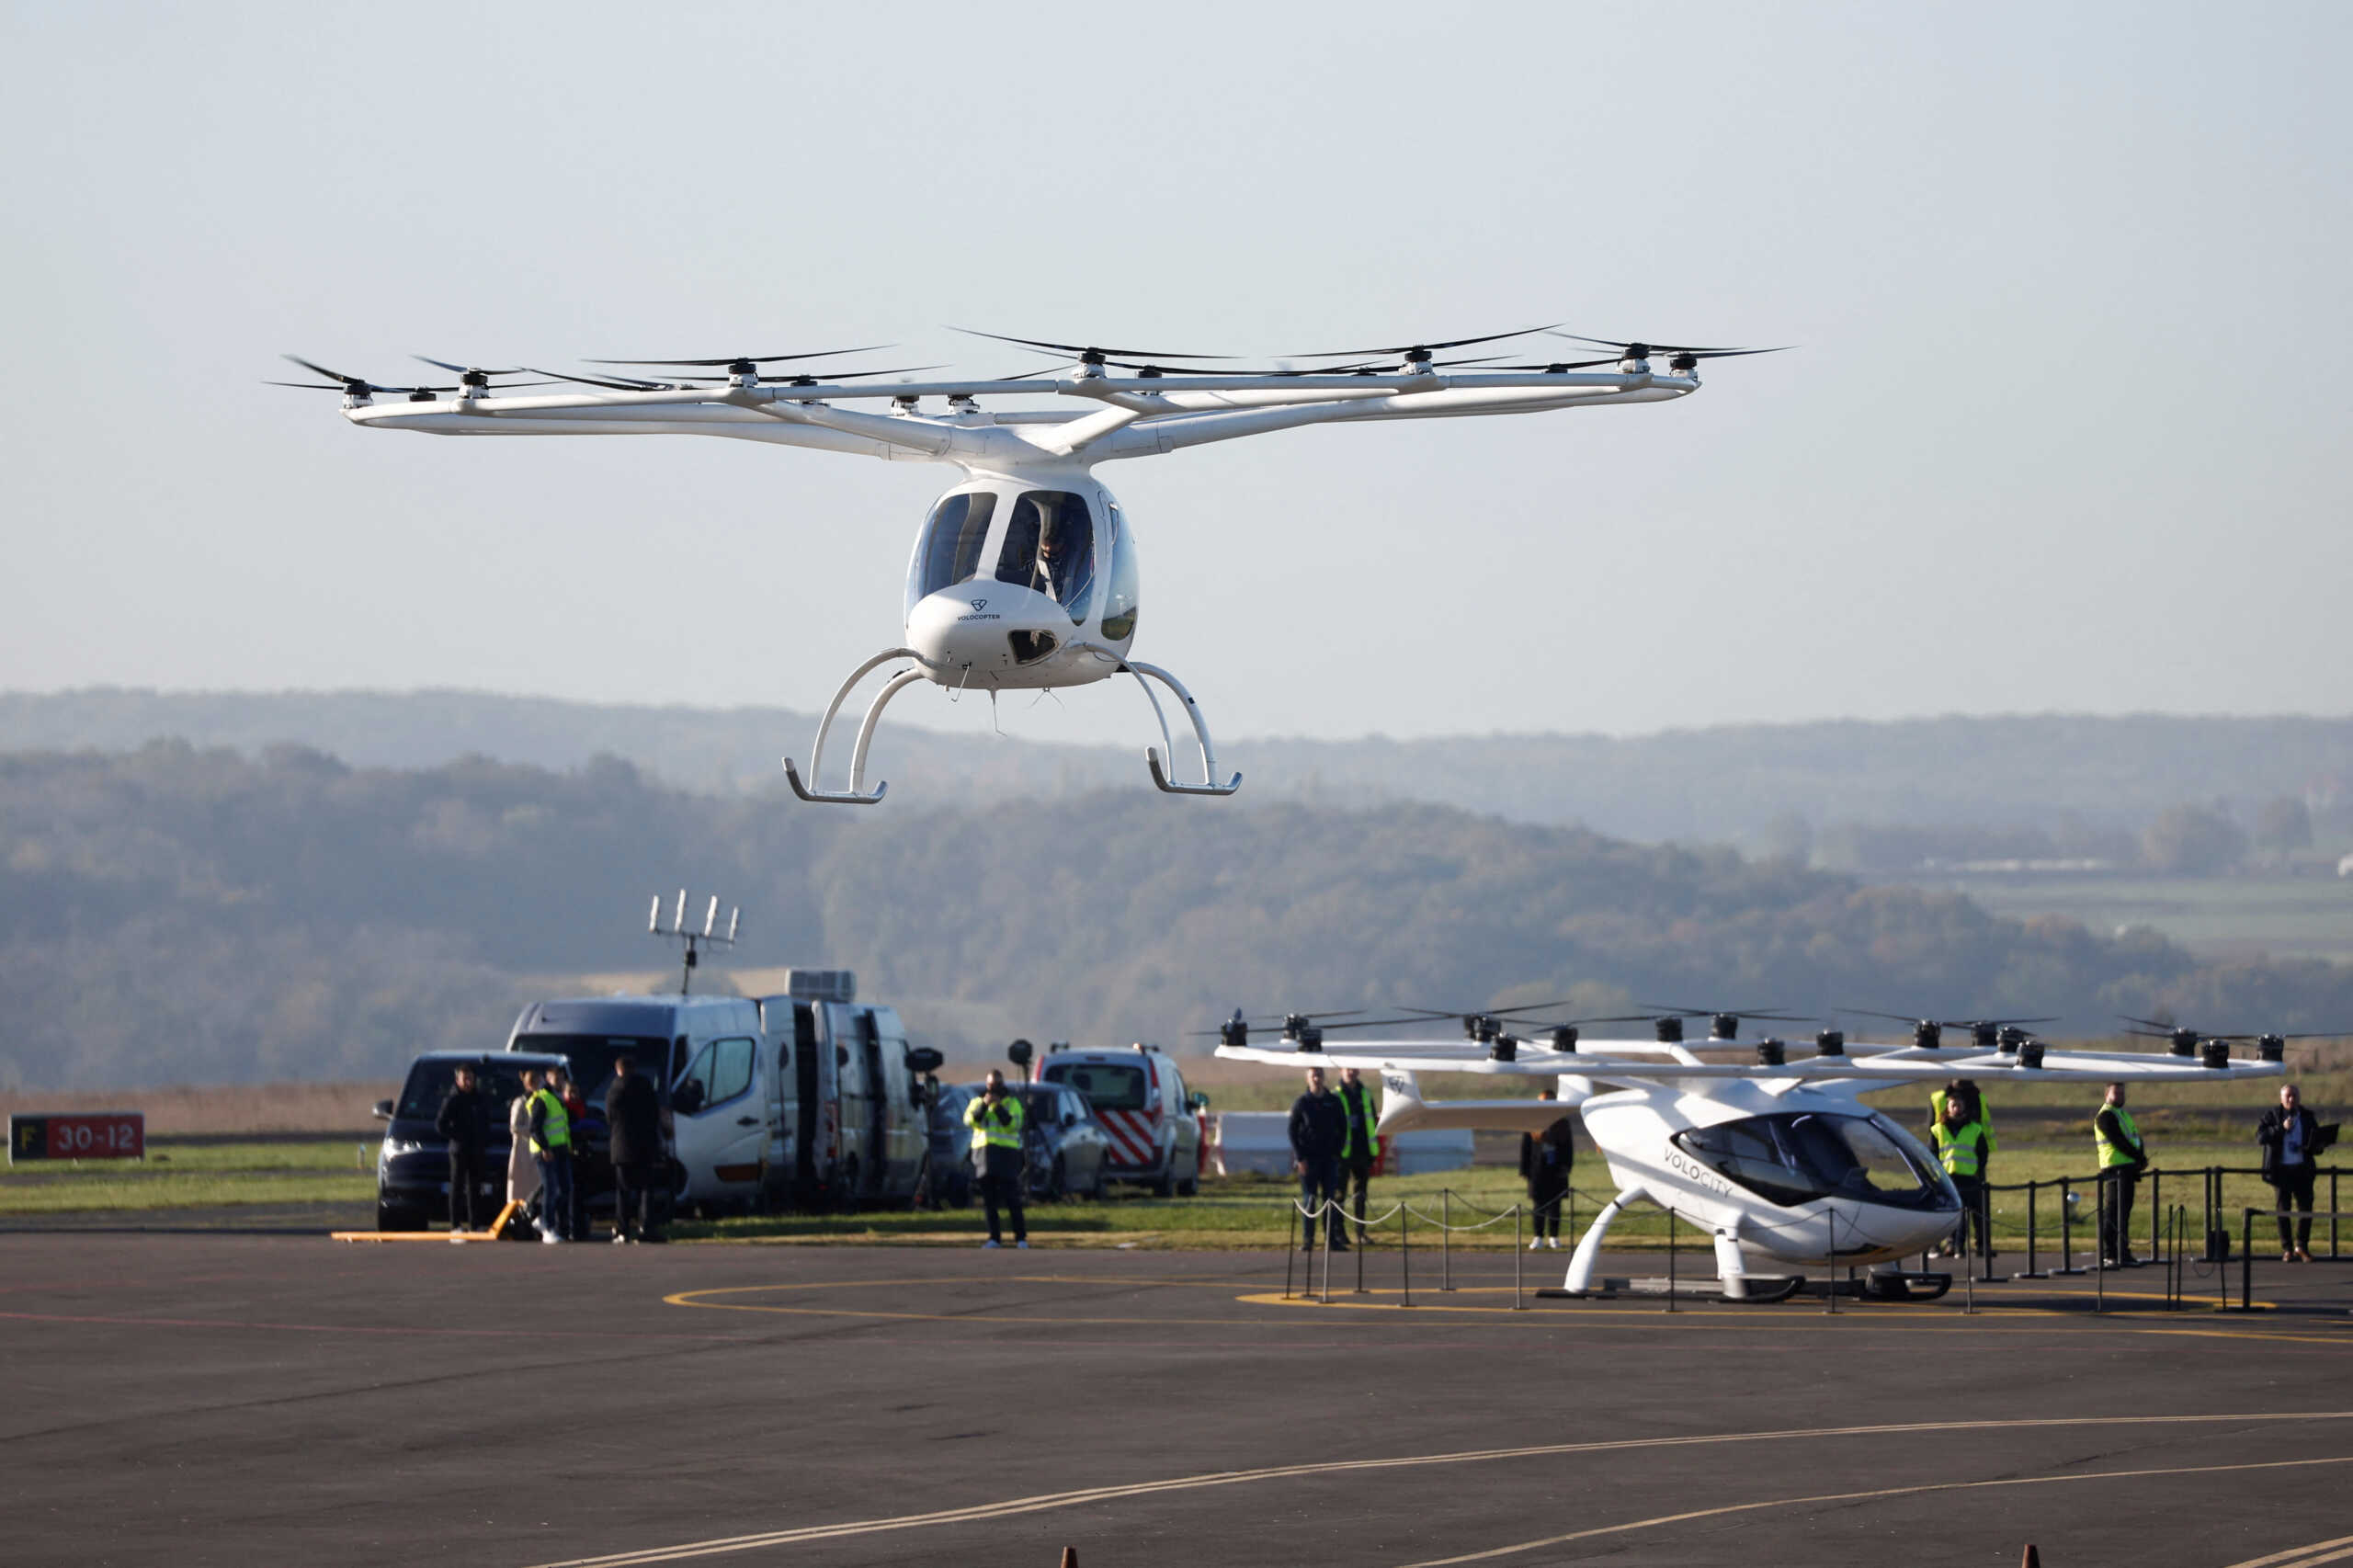 Ετοιμάζουν ένα drone ταξί για τους Ολυμπιακούς Αγώνες του 2024 στο Παρίσι - η πτήση πραγματοποιήθηκε σε πραγματικές συνθήκες